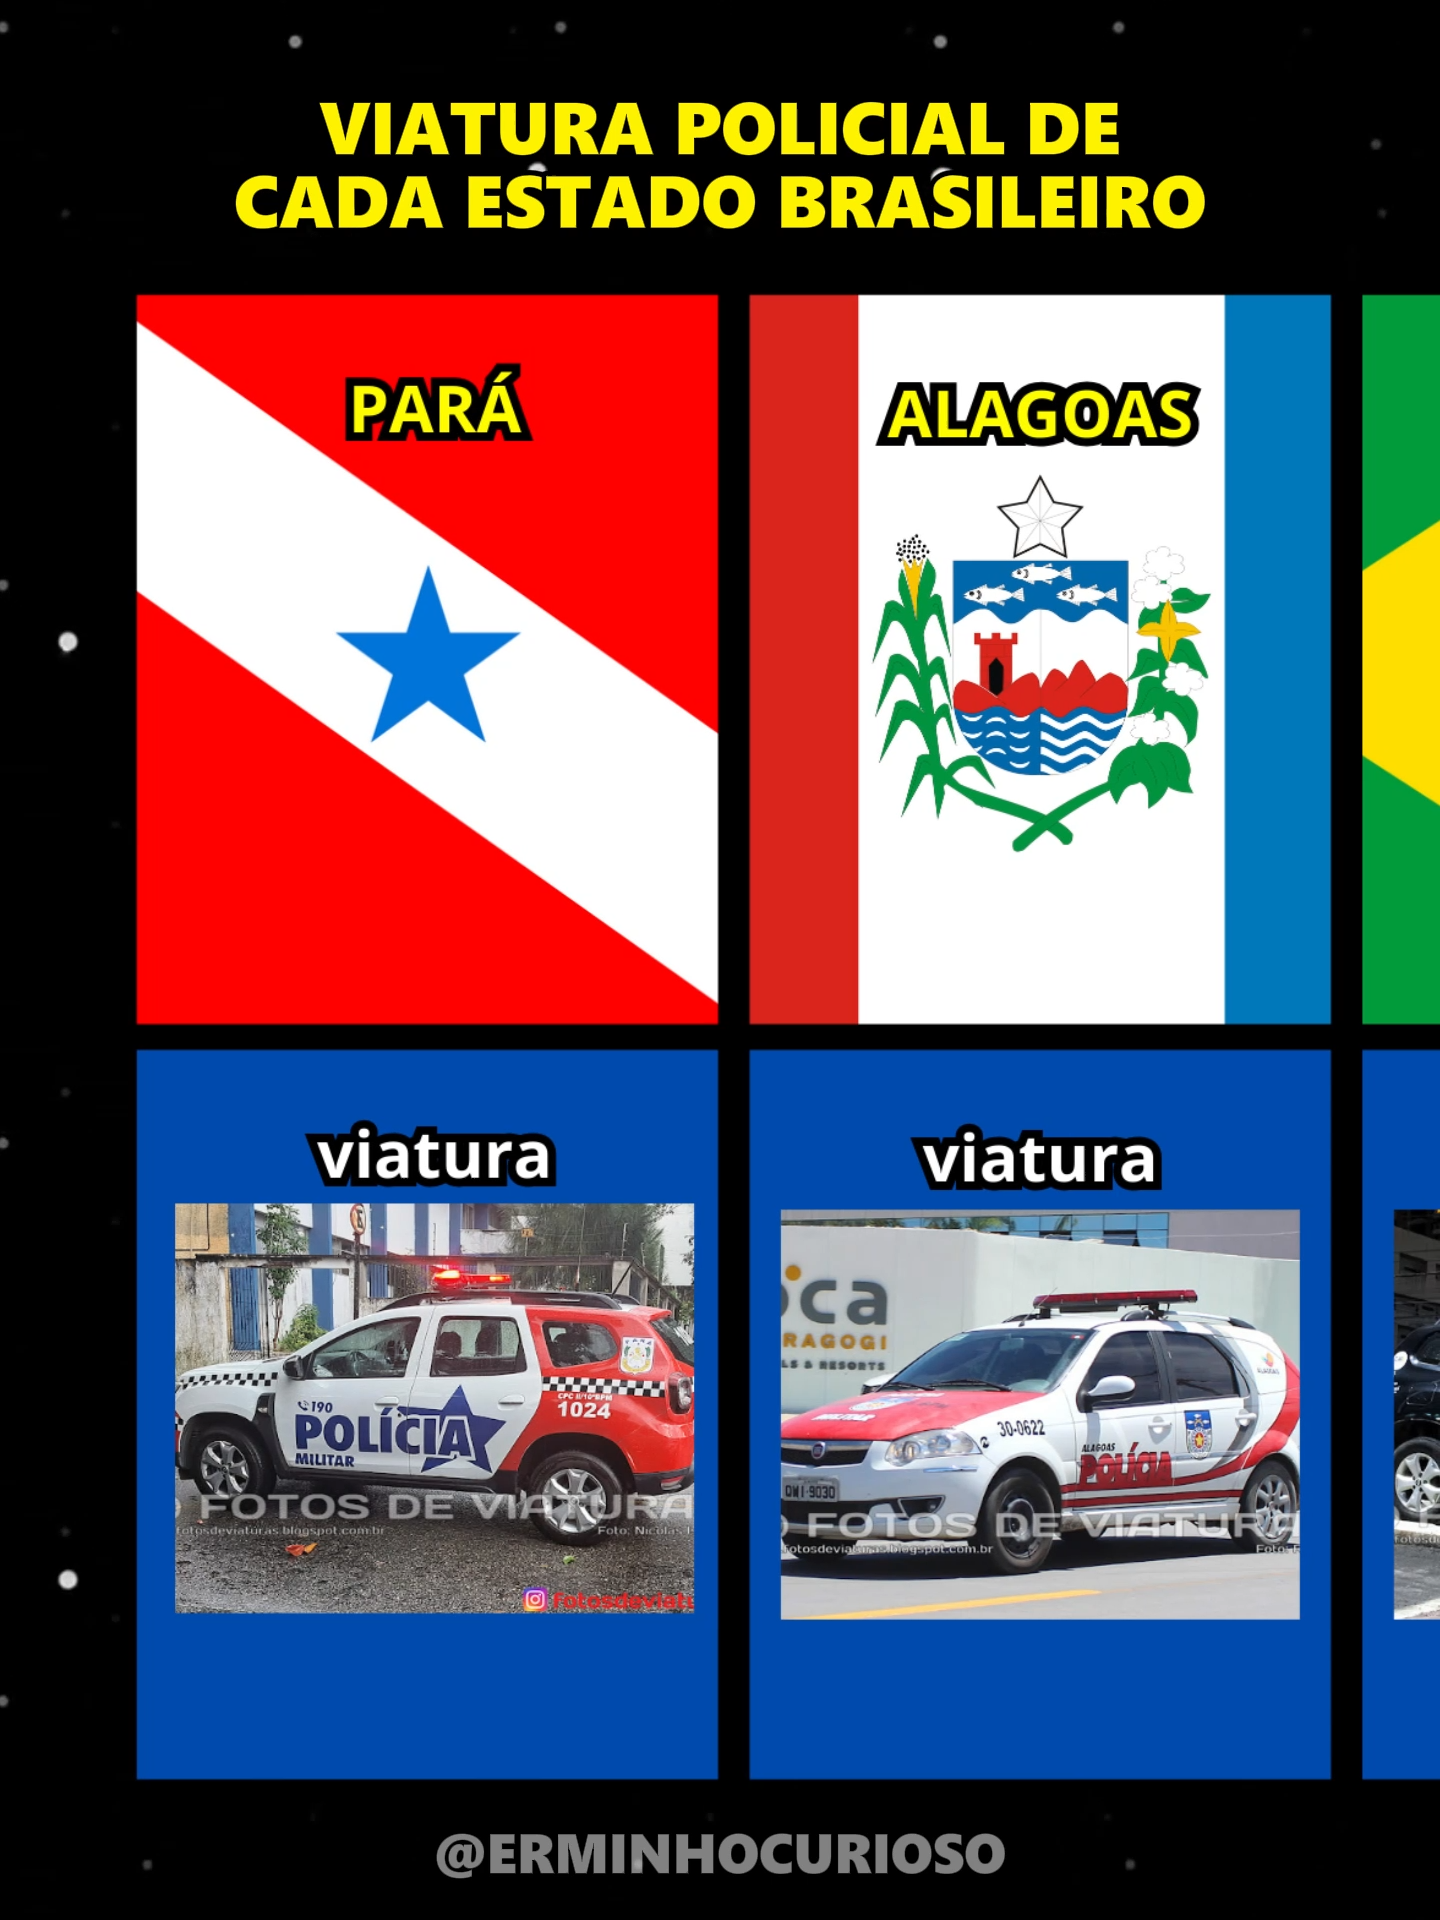 Viatura Policial de Cada Estado Brasileiro #policia #pernambuco #matogrosso #brasilia